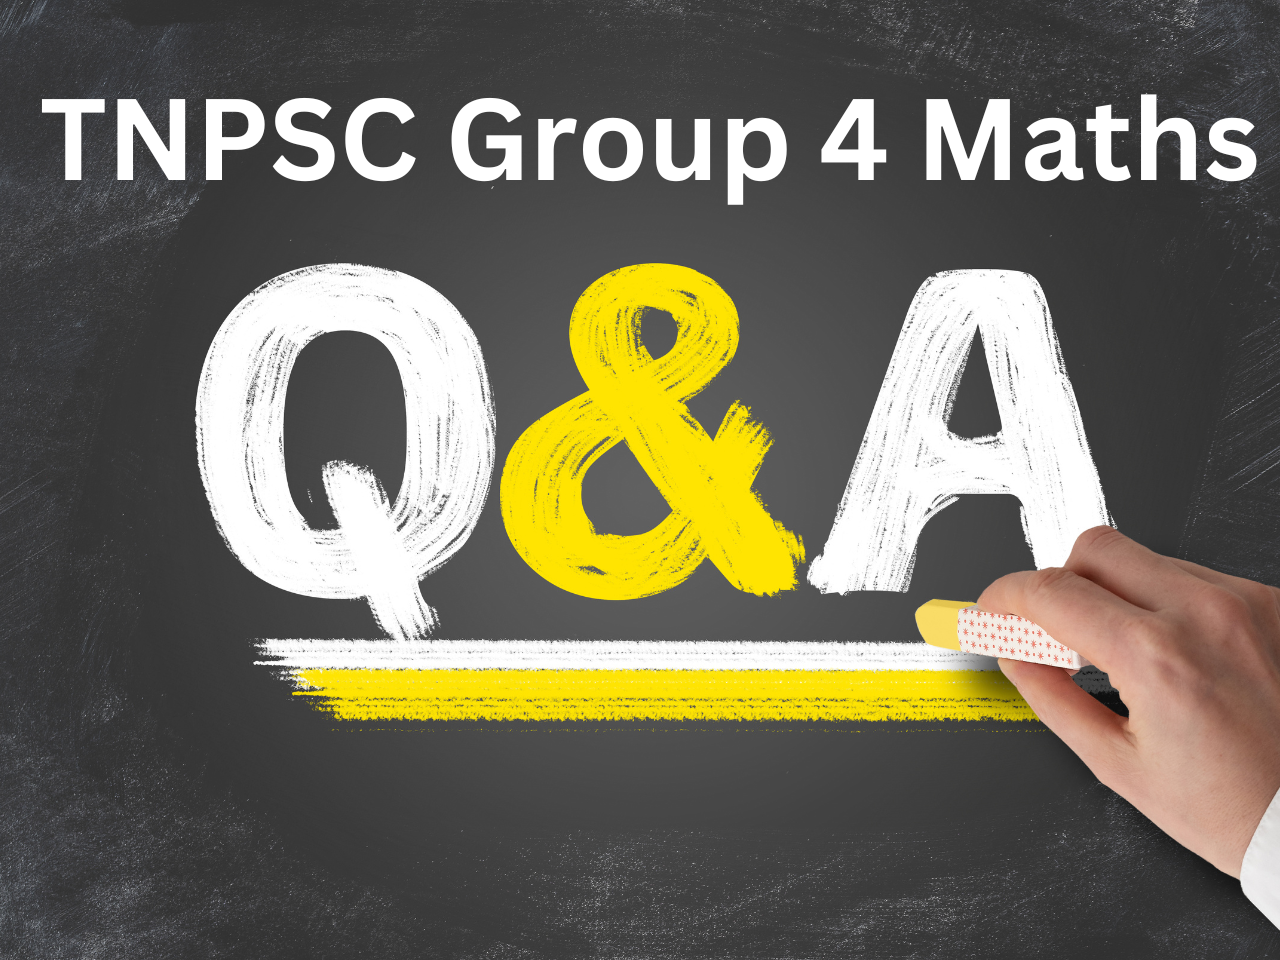 tnpsc group 4 maths questions